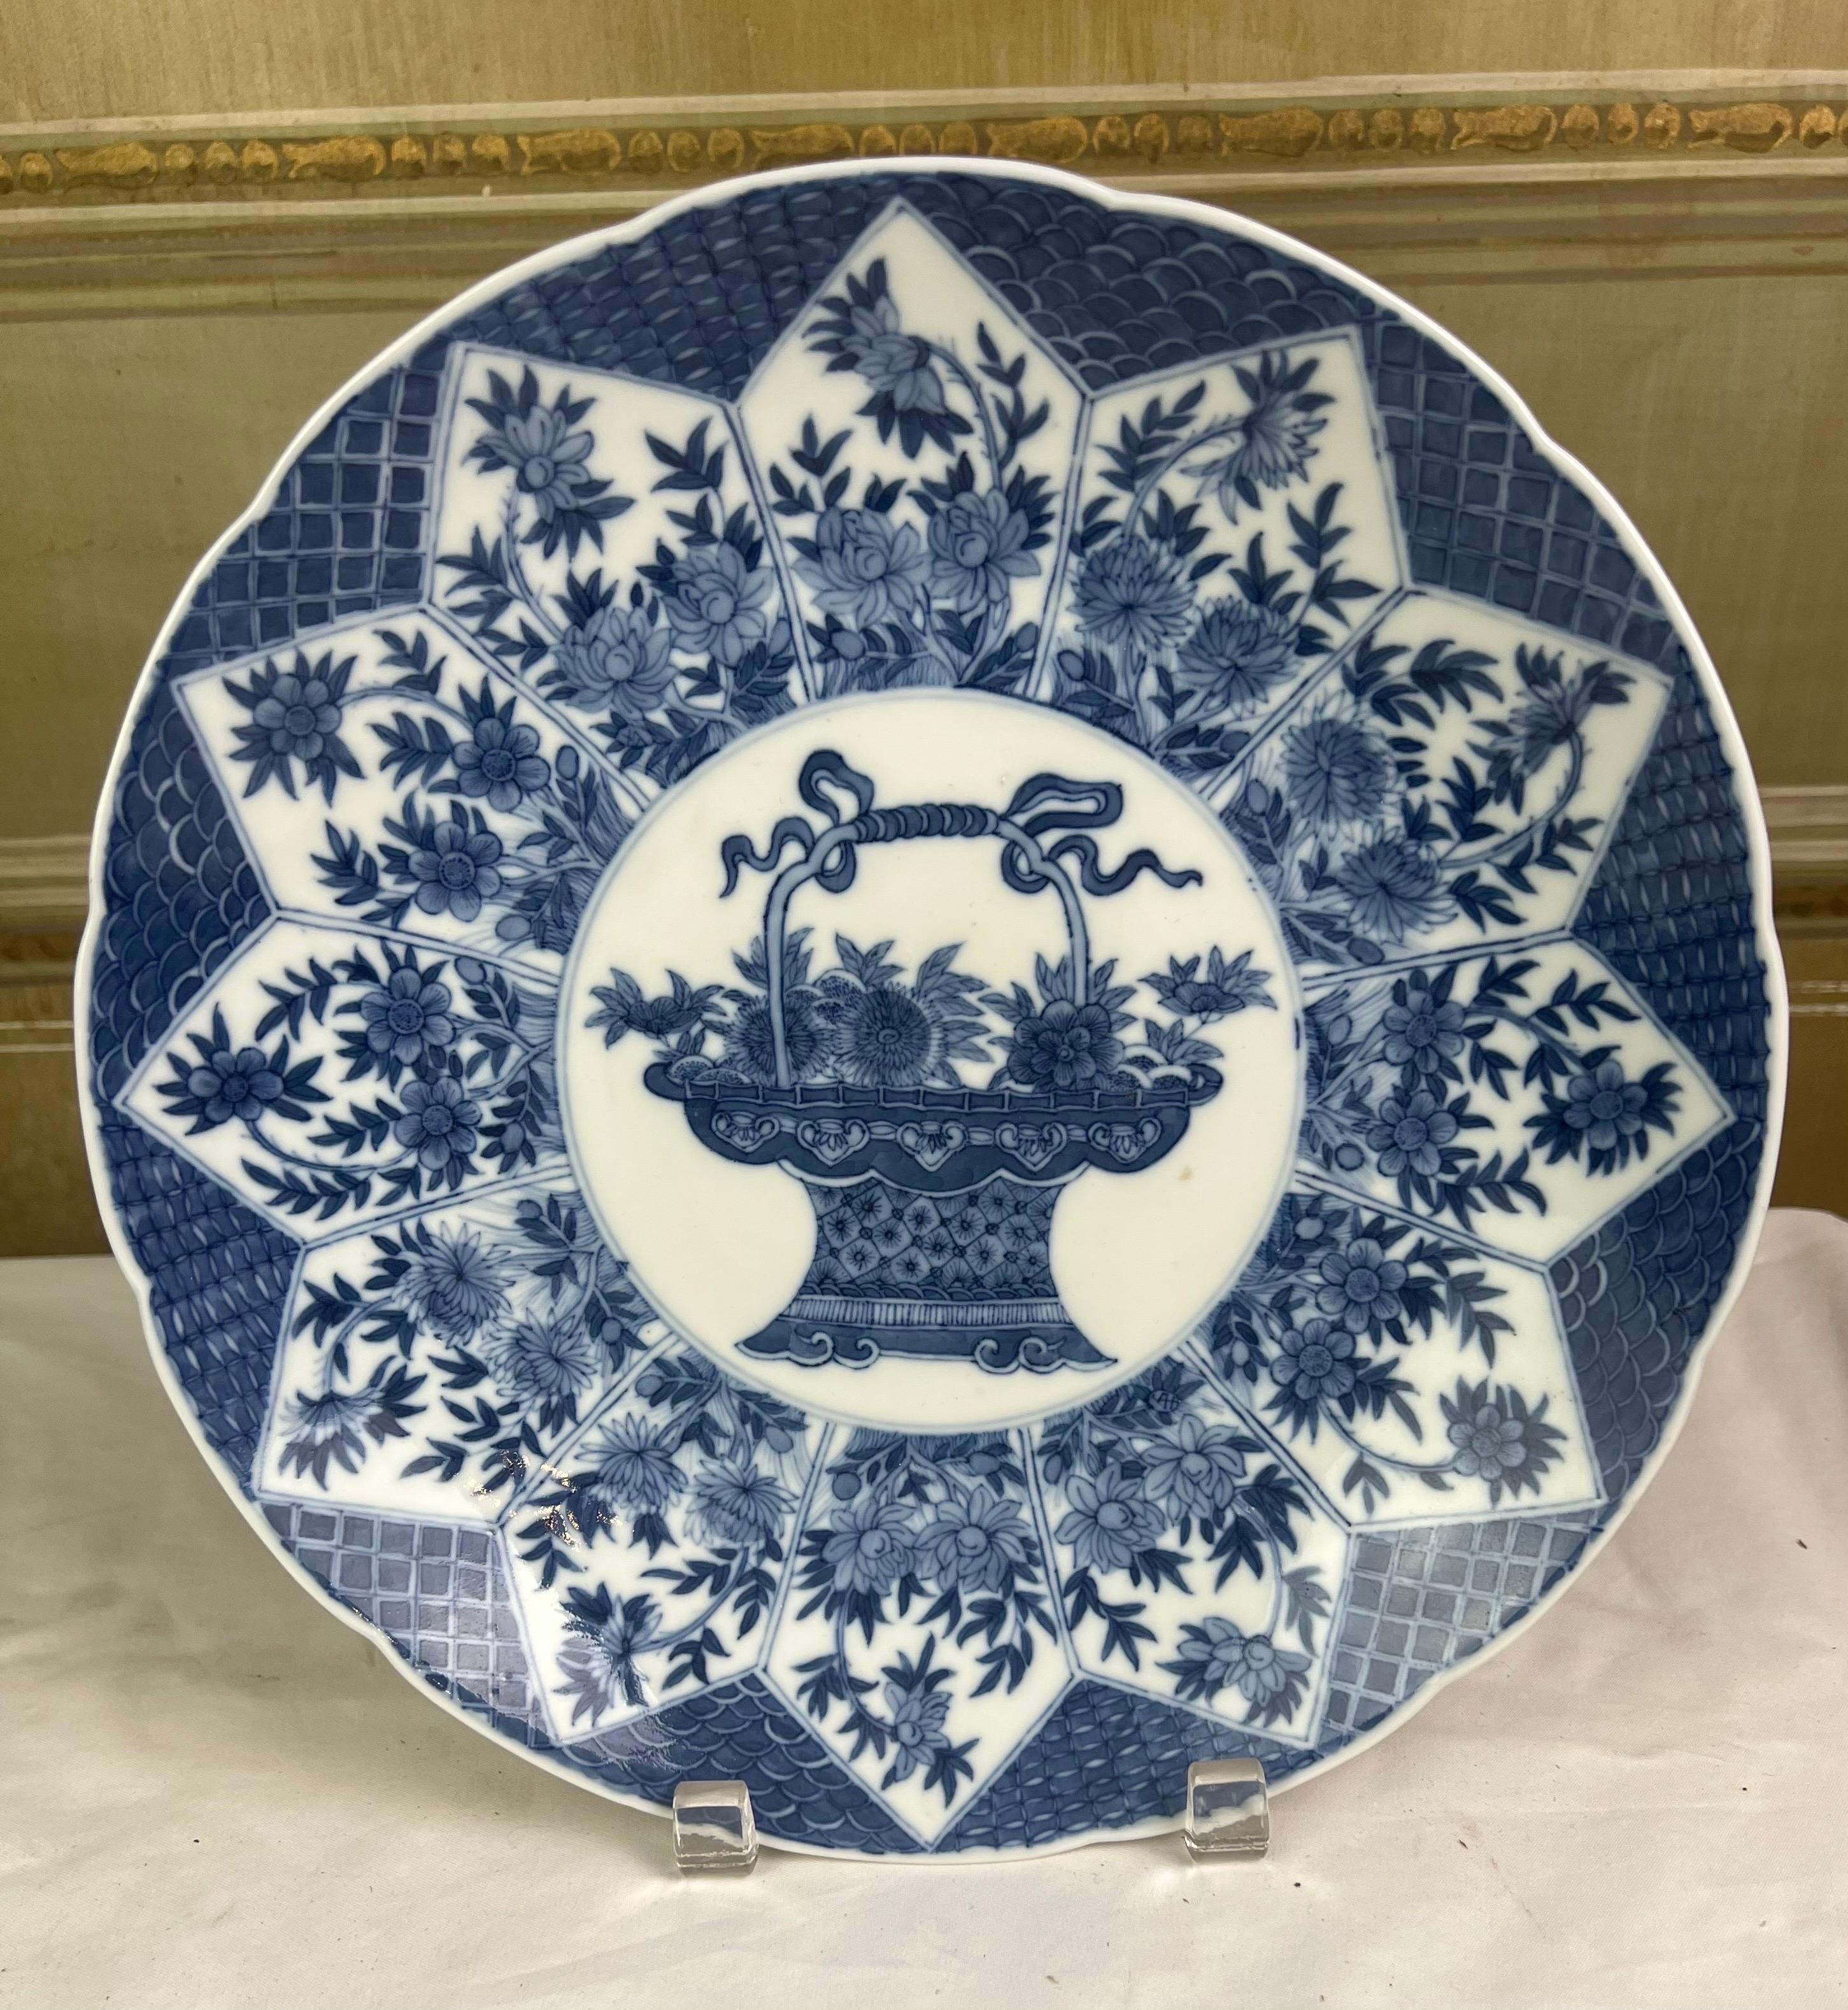 Plat sous glaçure de style dynastie Qing représentant un panier de fleurs
Magnifique porcelaine chinoise peinte à la main avec différentes nuances de bleu cobalt.
Excellent état.  


